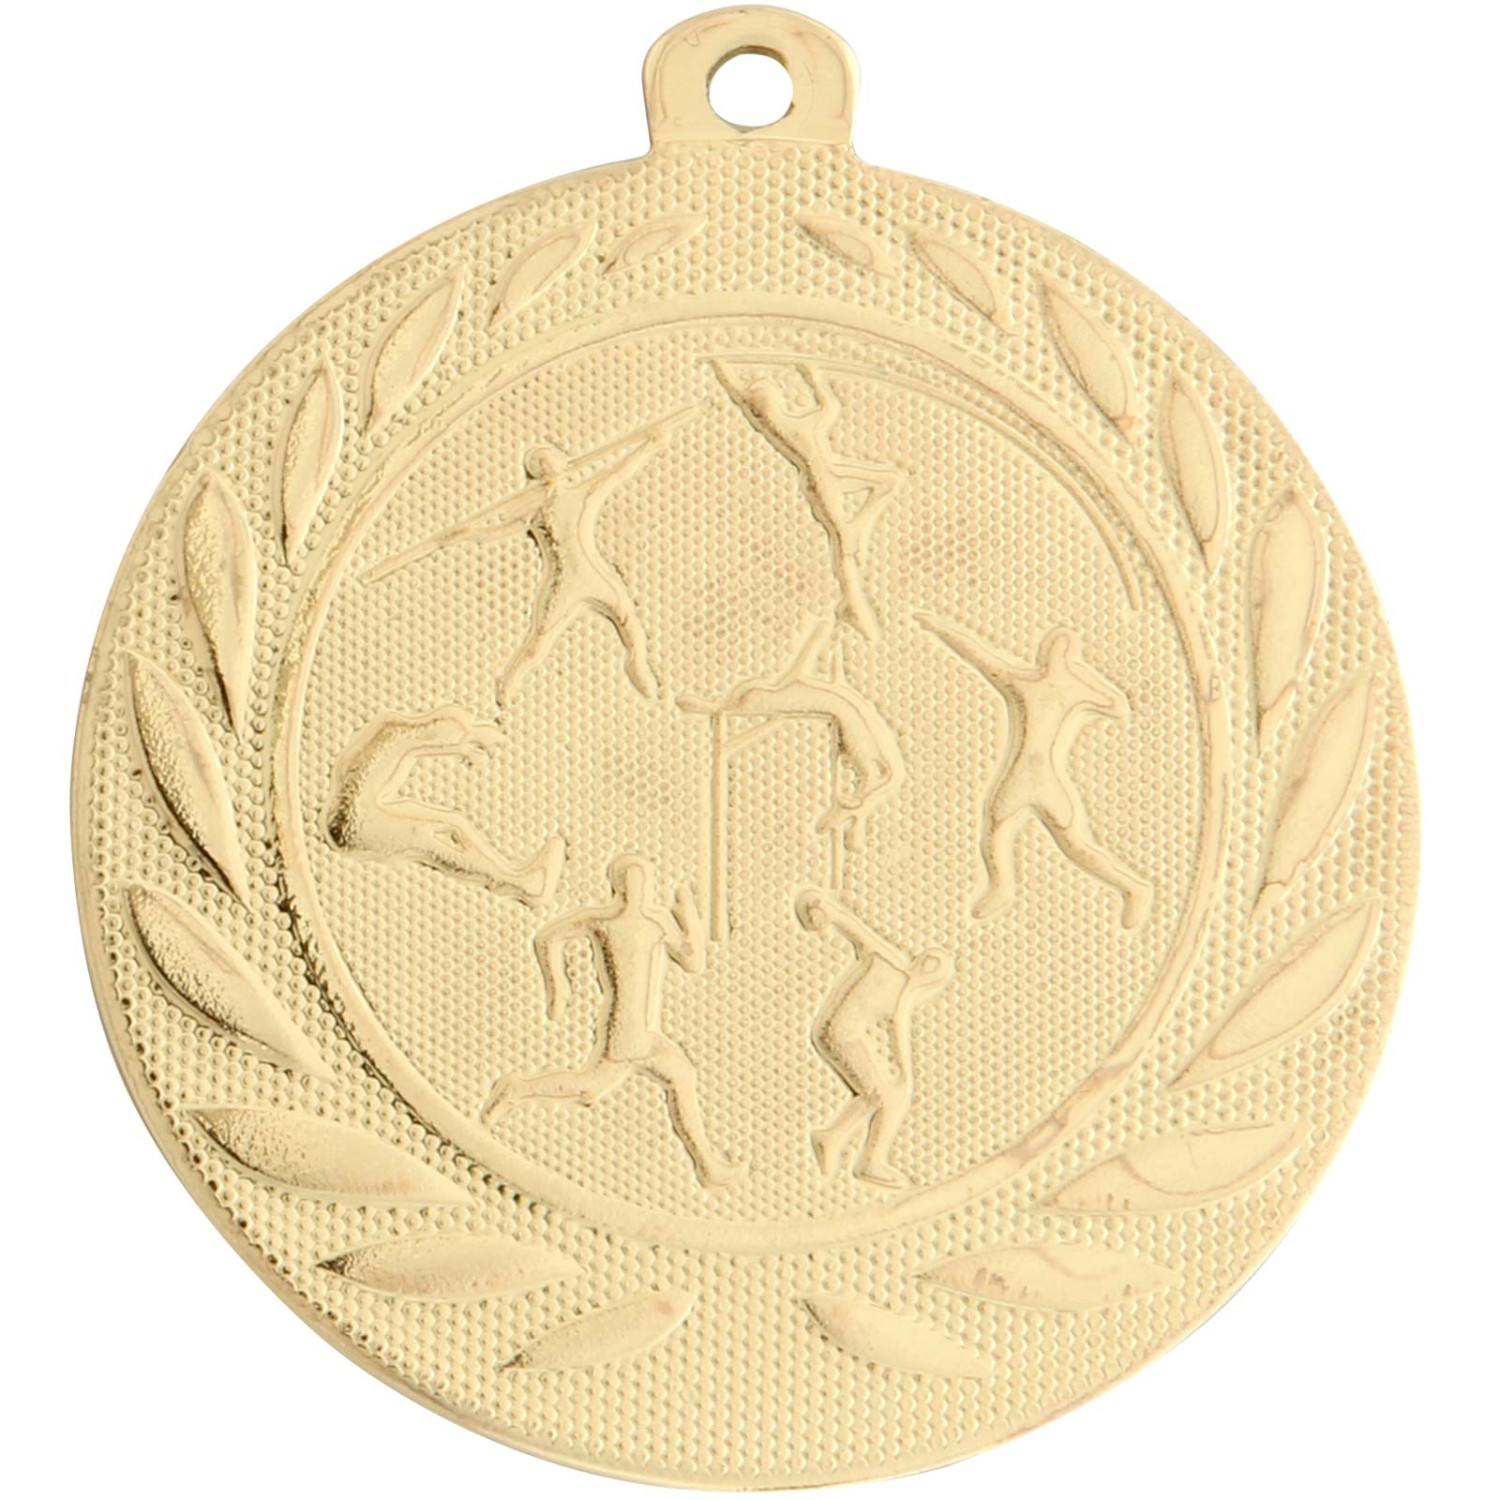 1. Foto Medaille Leichtathletik aus Stahl gold silber bronze 50 mm (Sorte: Set je 1x gold / silber / bronze)